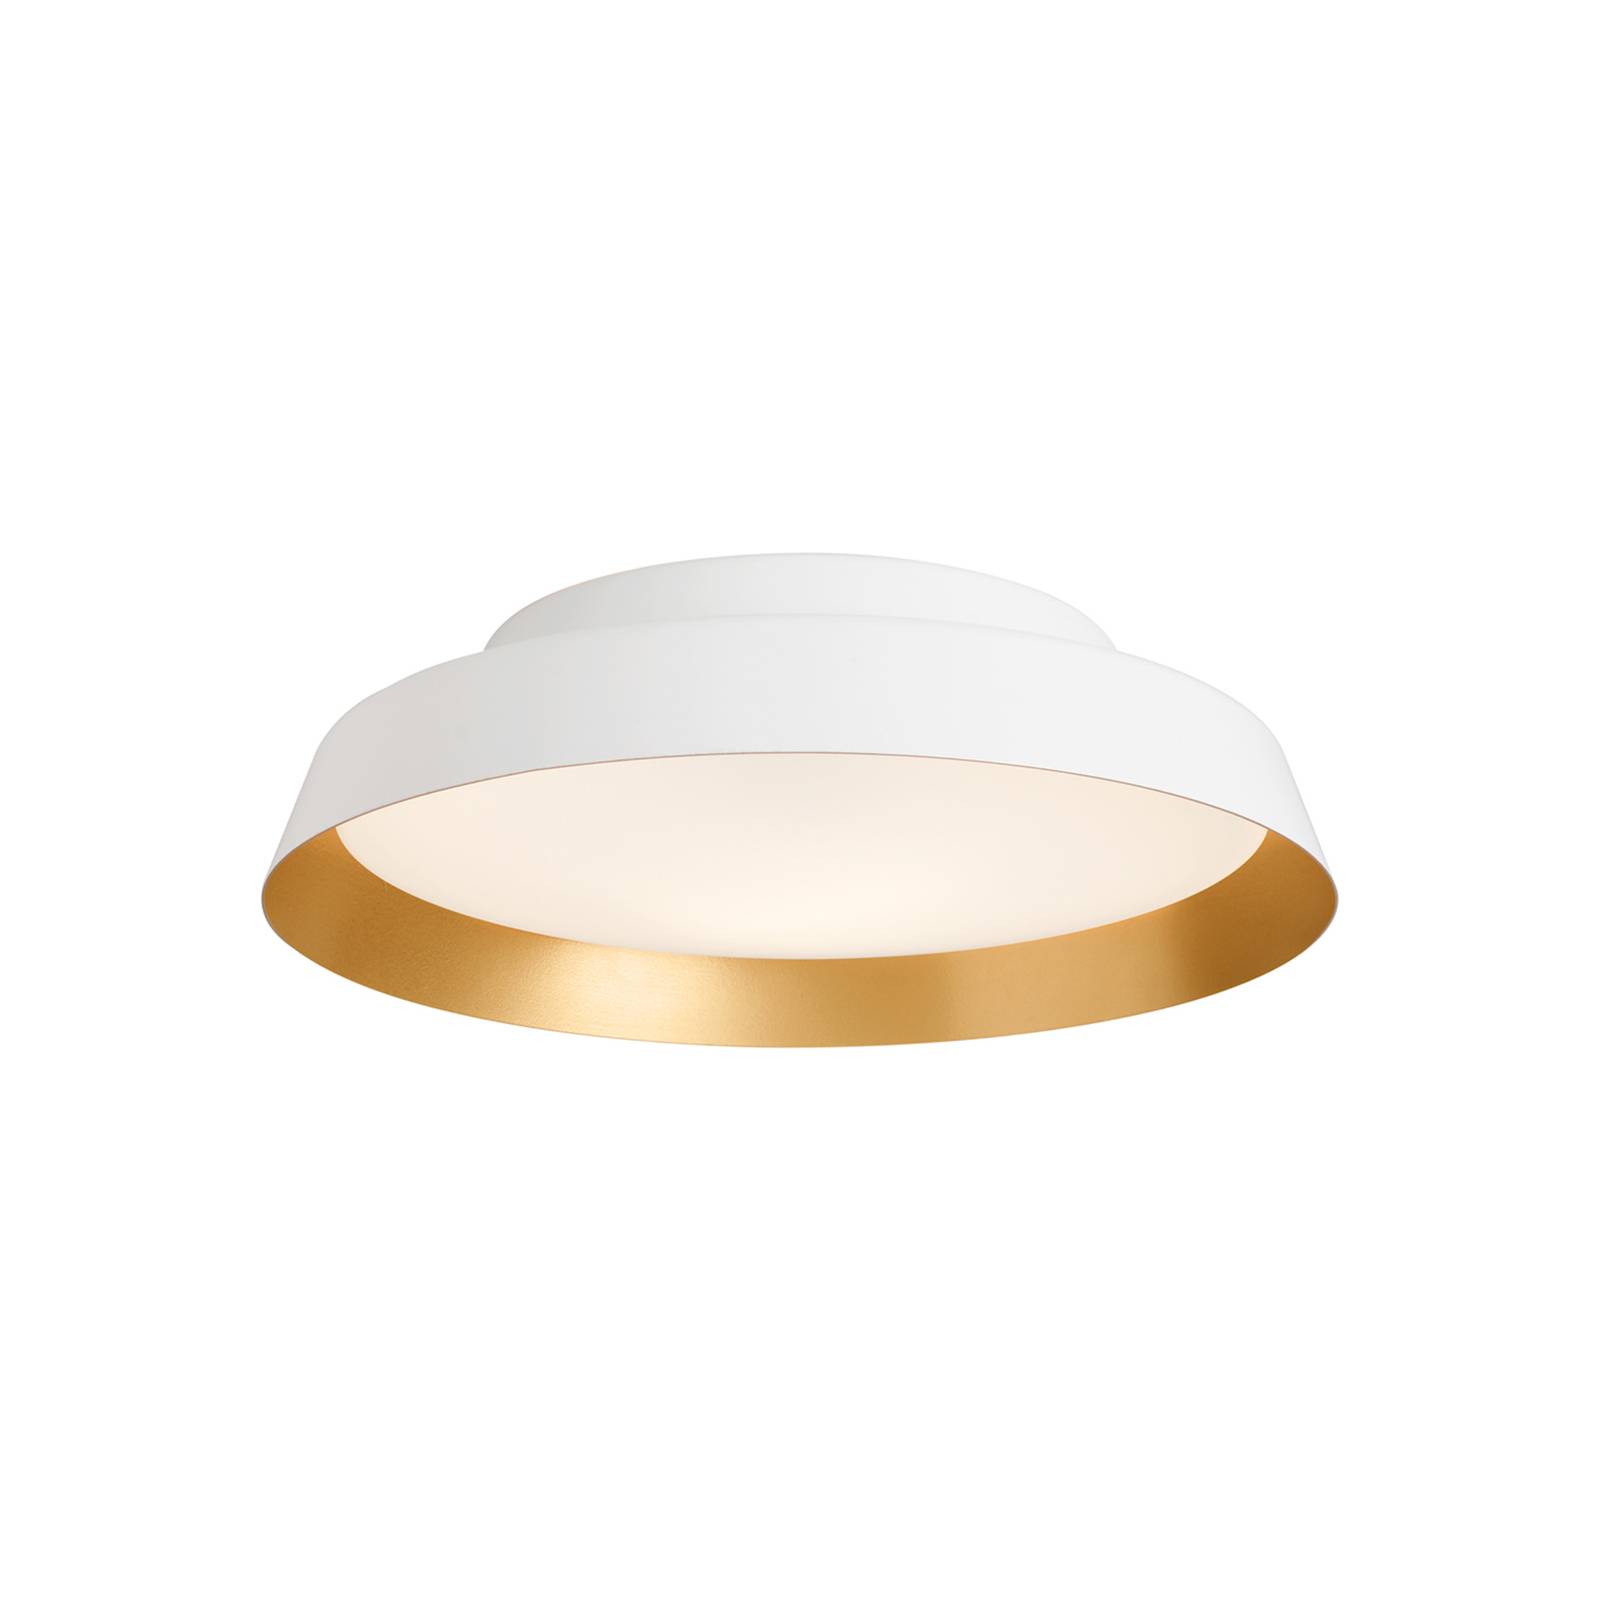 LED mennyezeti világítás Boop! Ø 54 cm fehér/arany